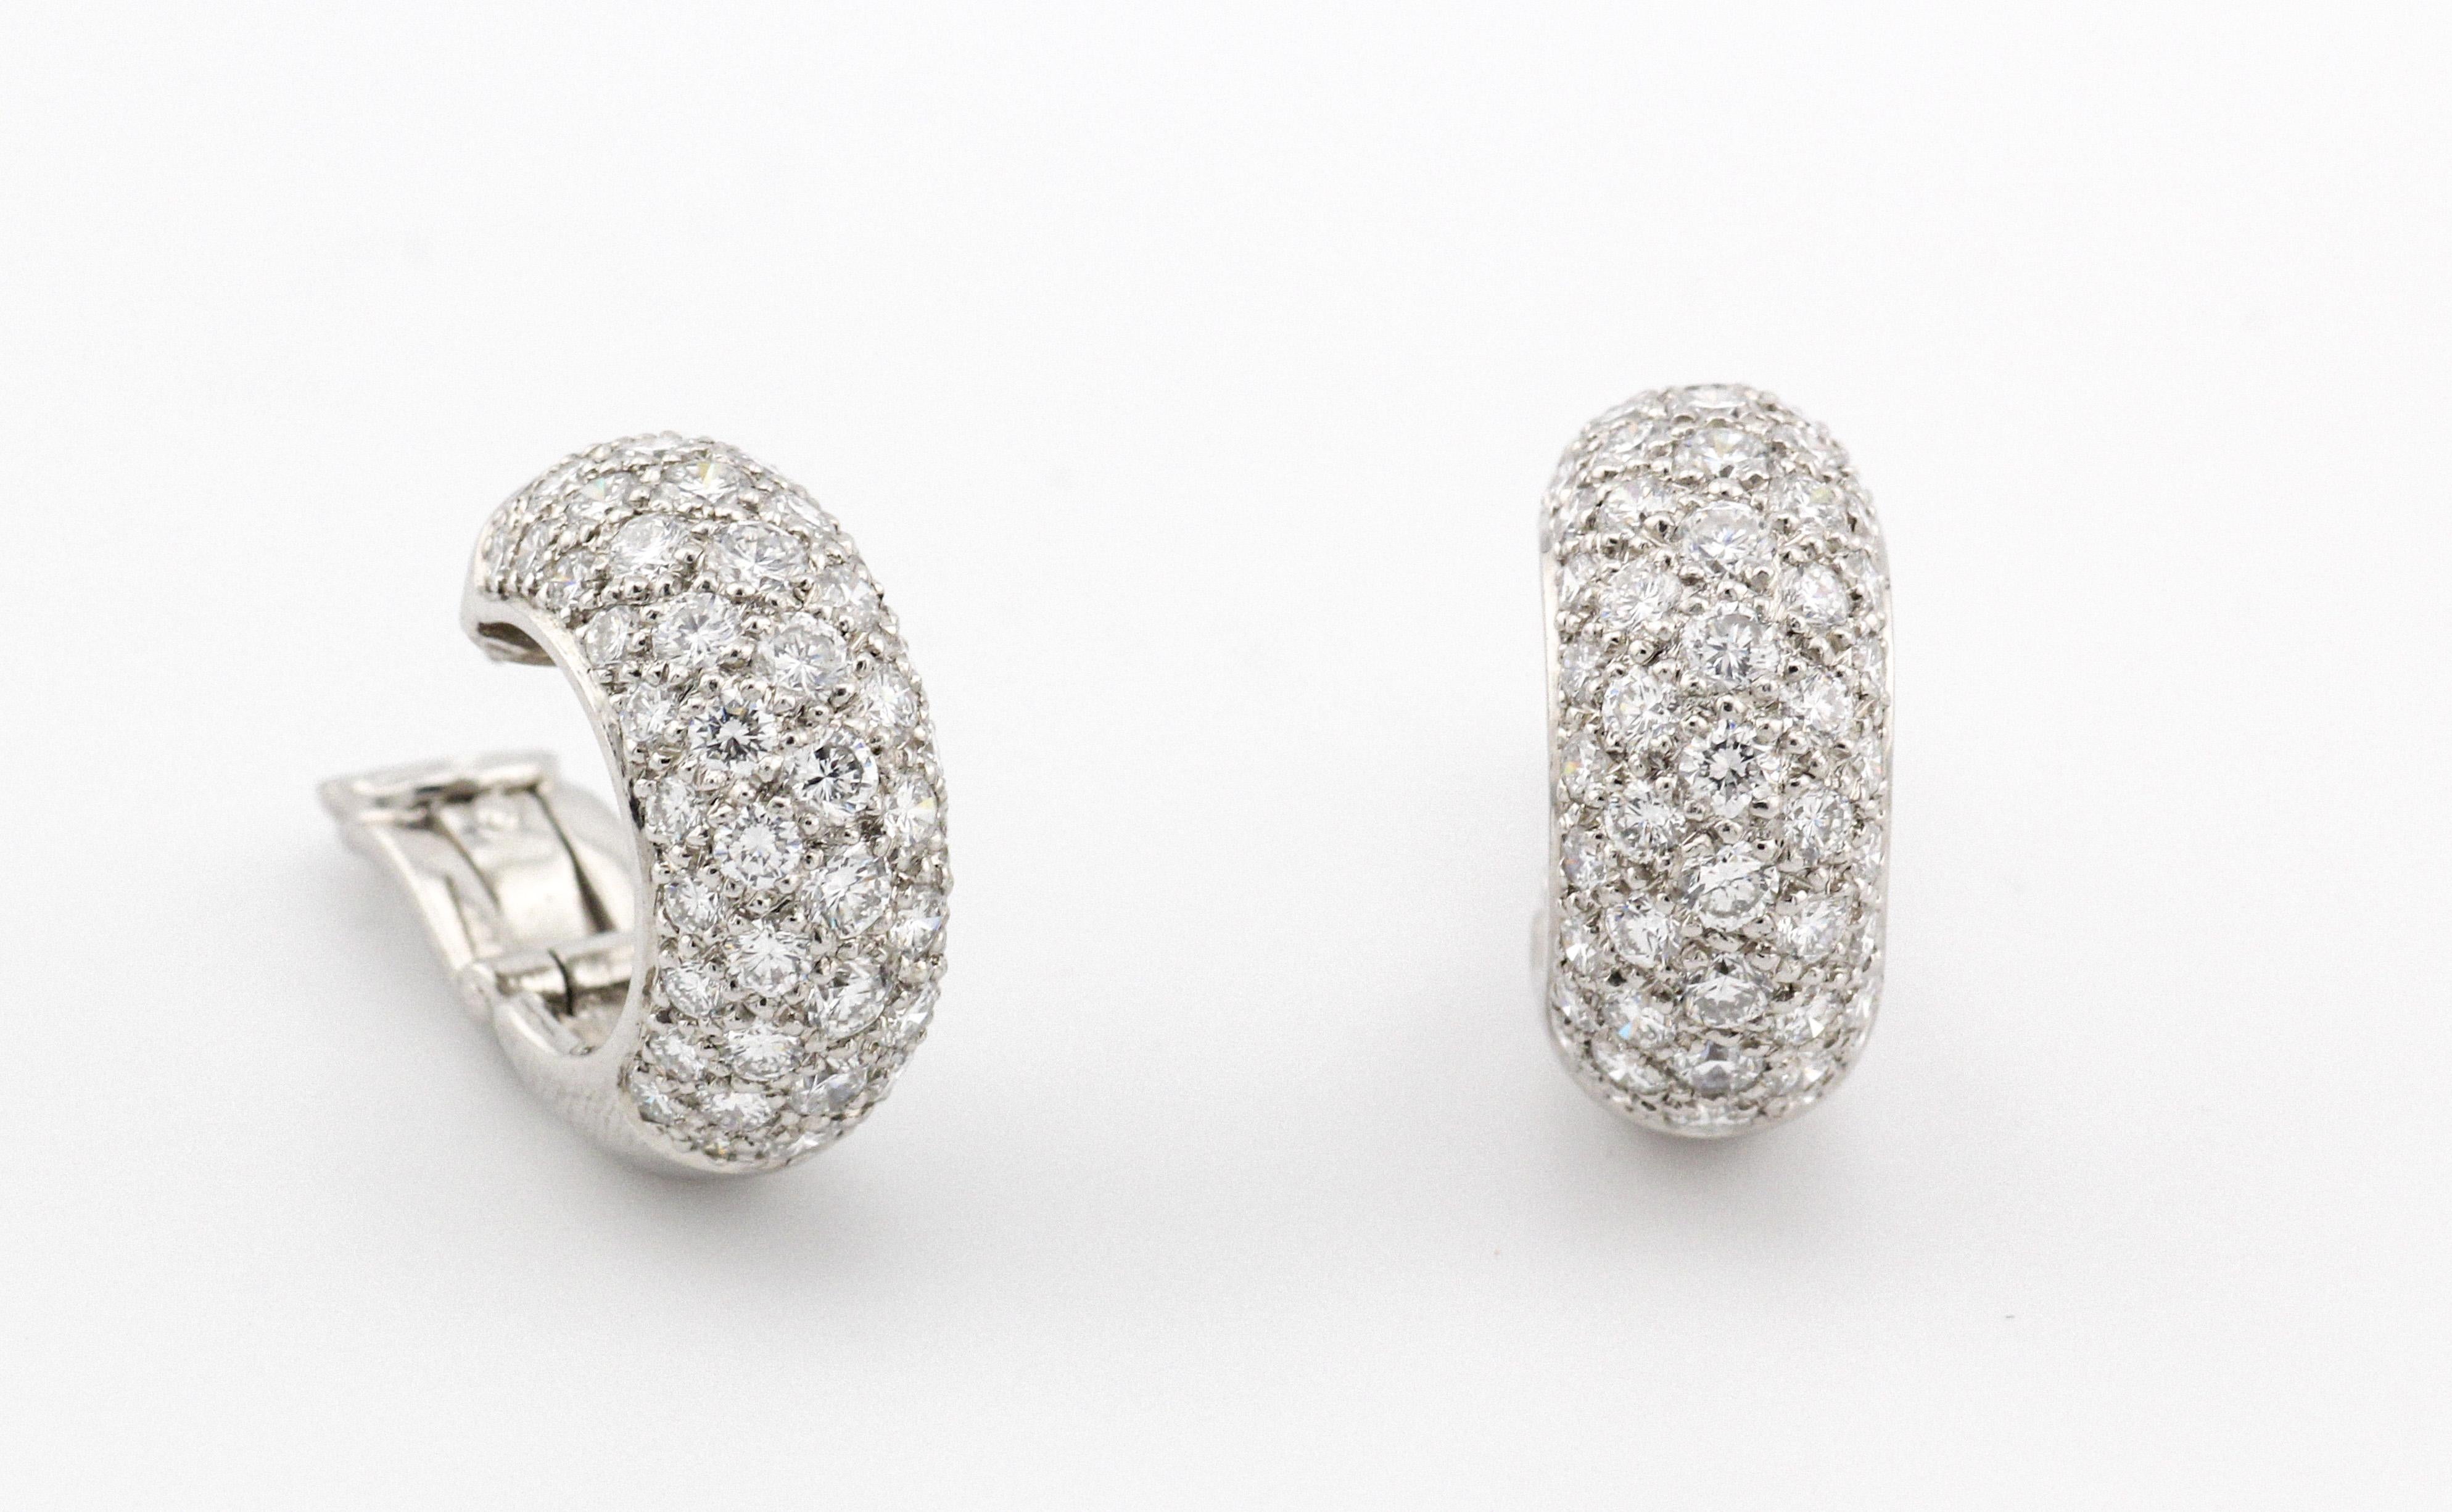 Der Inbegriff von Eleganz und Raffinesse - die Tiffany & Co. Etoile 5-reihiger Diamant-Ohrring aus Platin. Diese Ohrringe, die von der berühmten Luxusmarke in sorgfältiger Handarbeit hergestellt werden, definieren zeitlose Schönheit mit einer